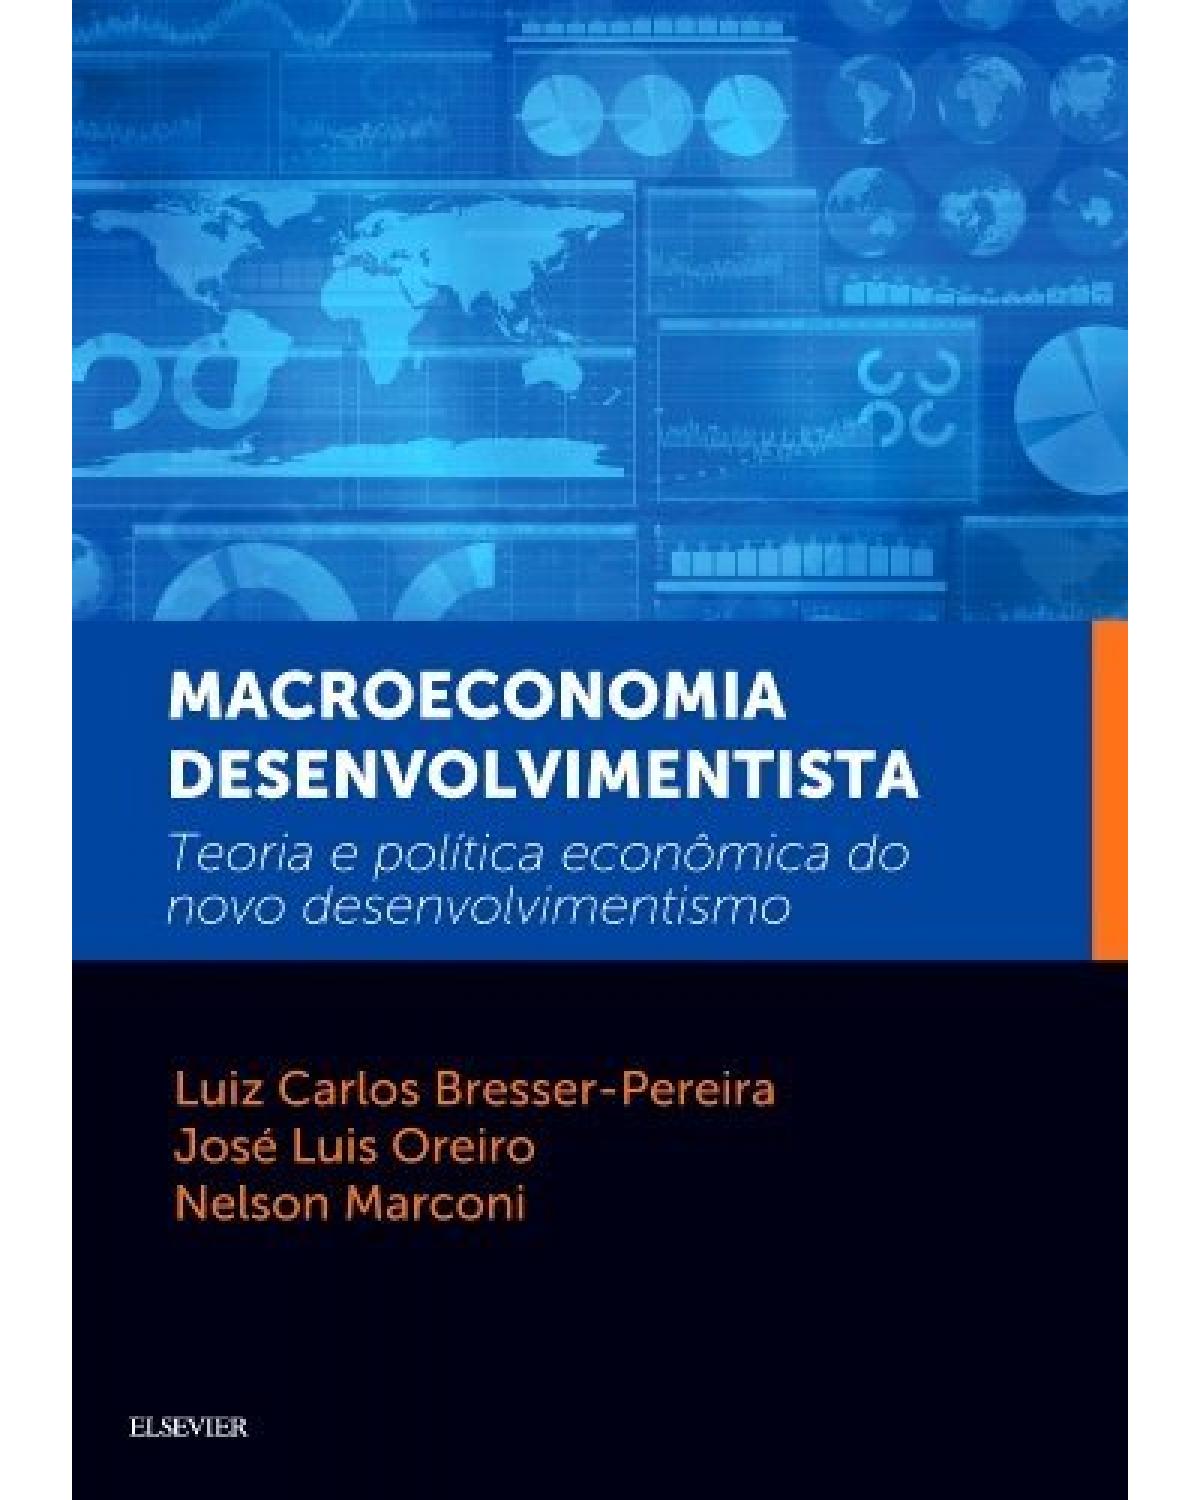 Macroeconomia desenvolvimentista - teoria e política econômica do novo desenvolvimentismo - 1ª Edição | 2016